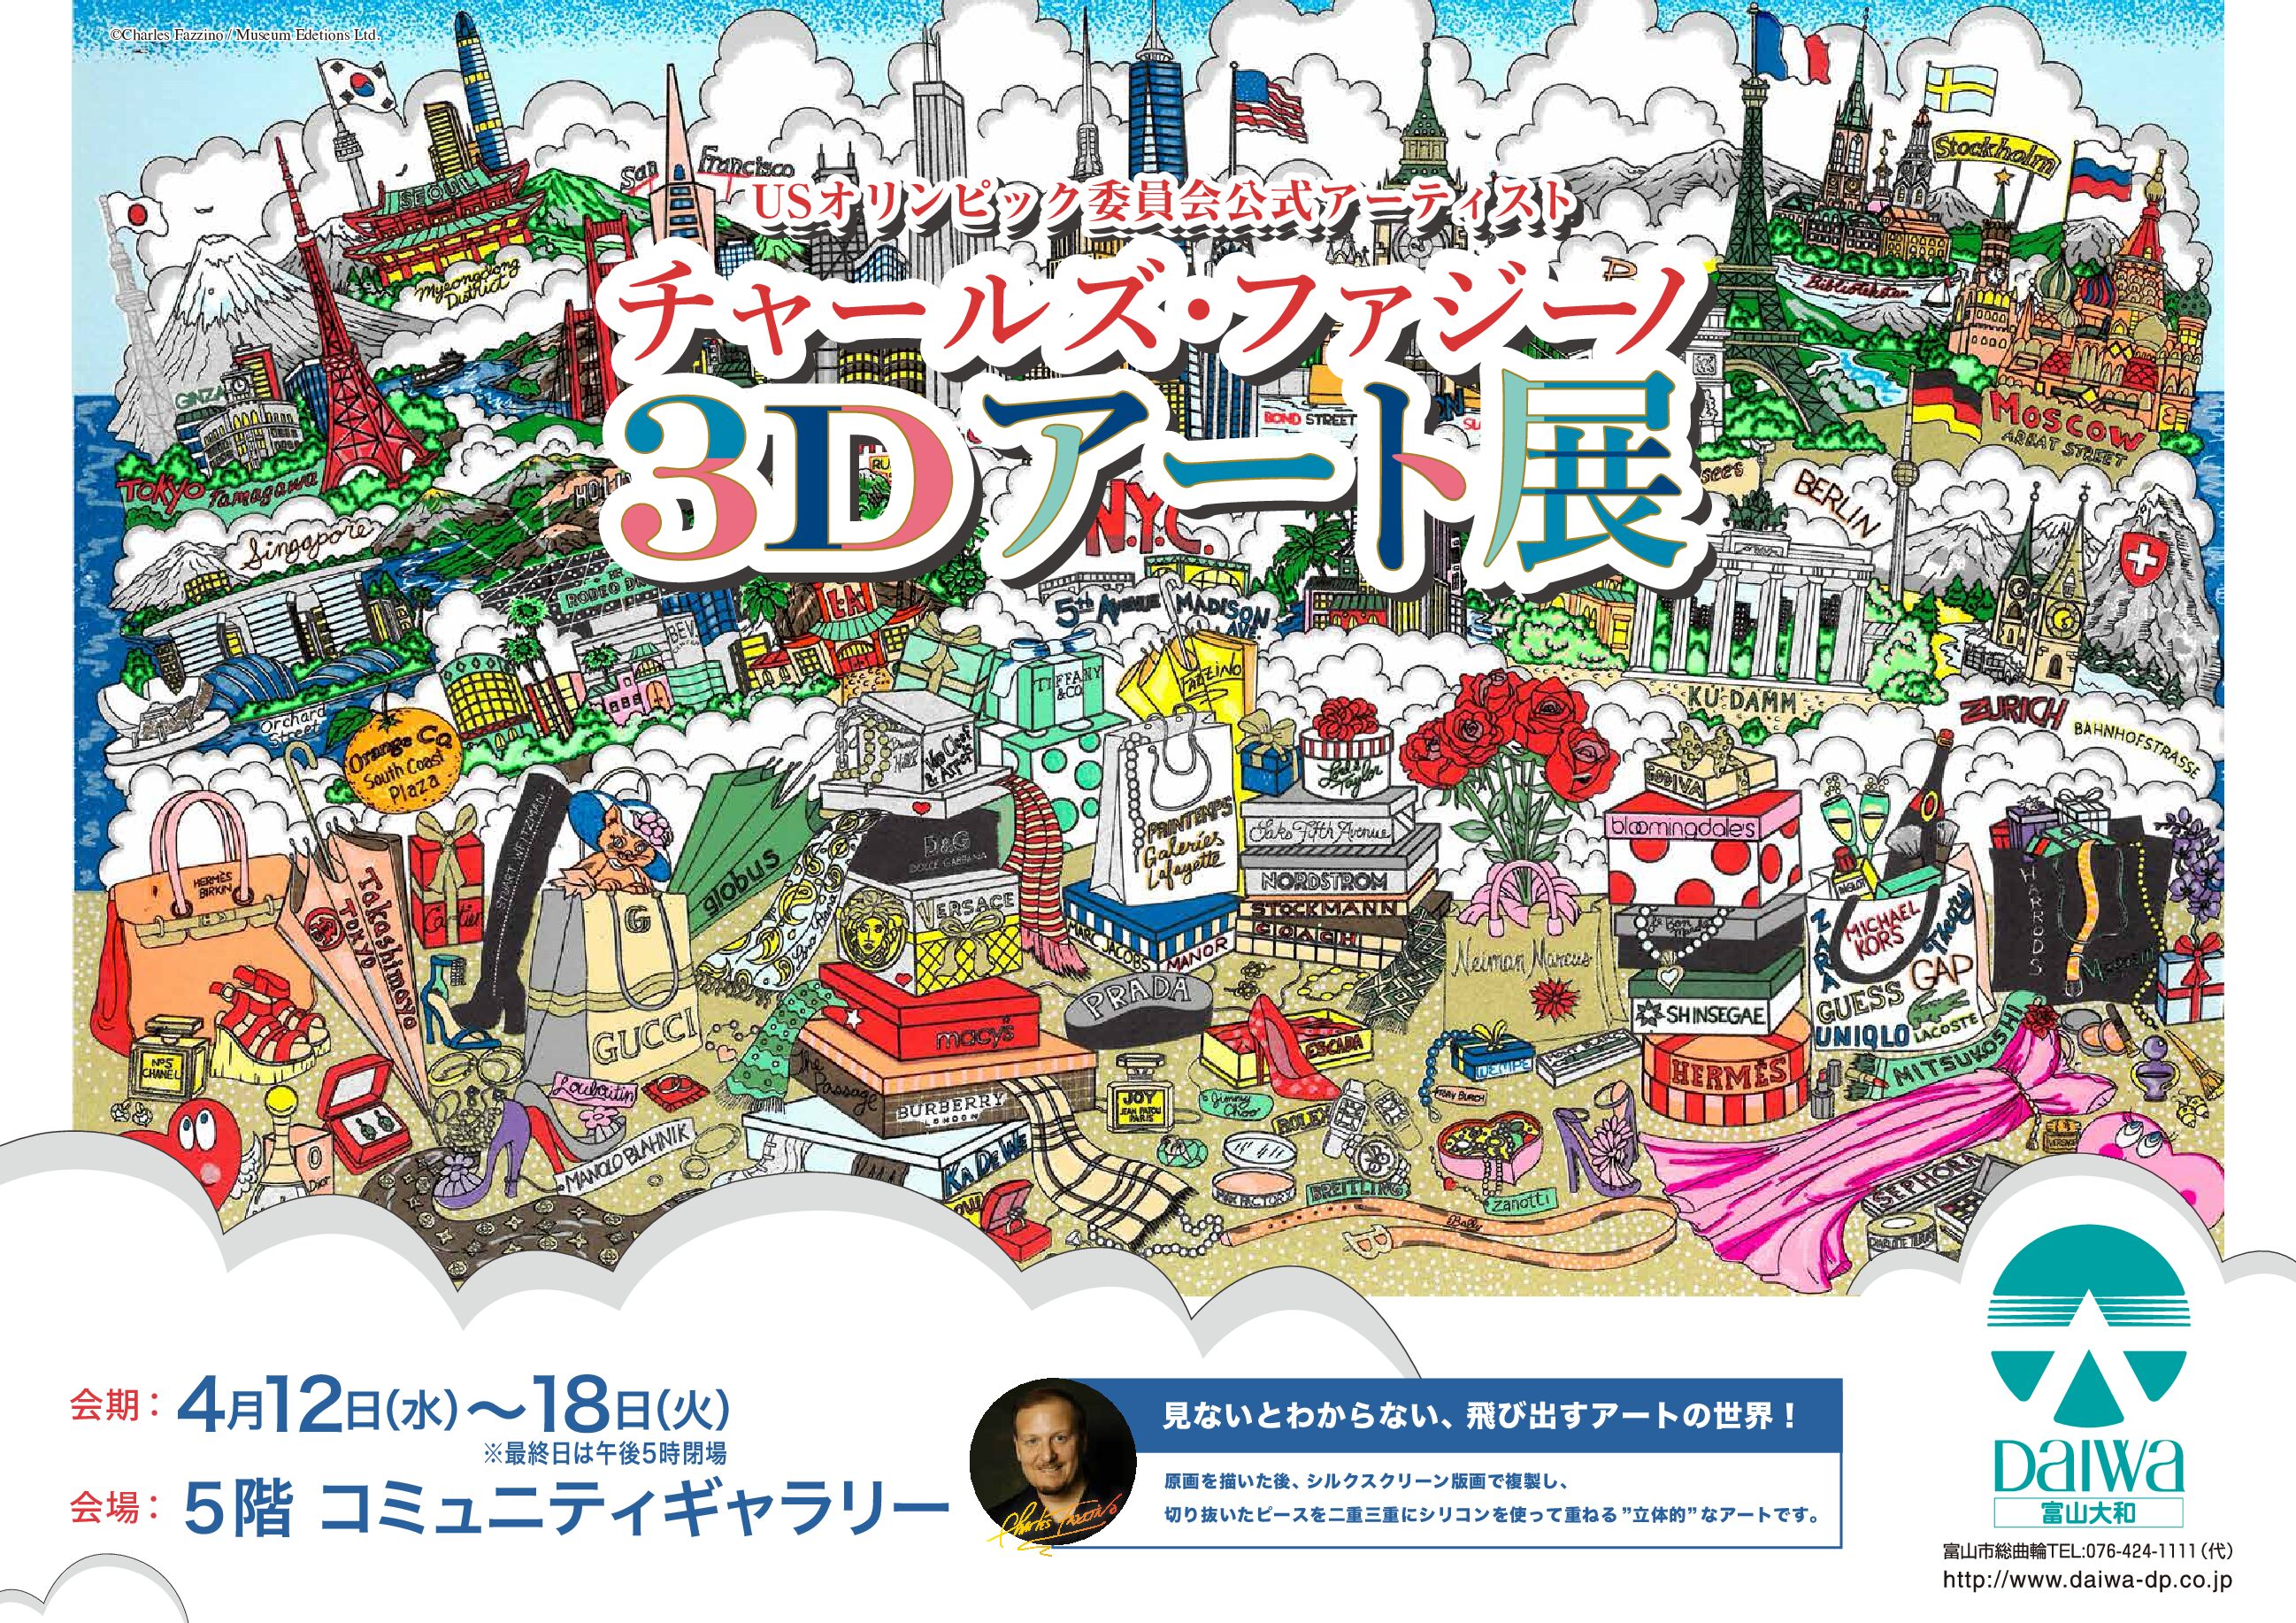 チャールズ・ファジーノ 3Dアート展」富山大和で開催のお知らせ | ハイ